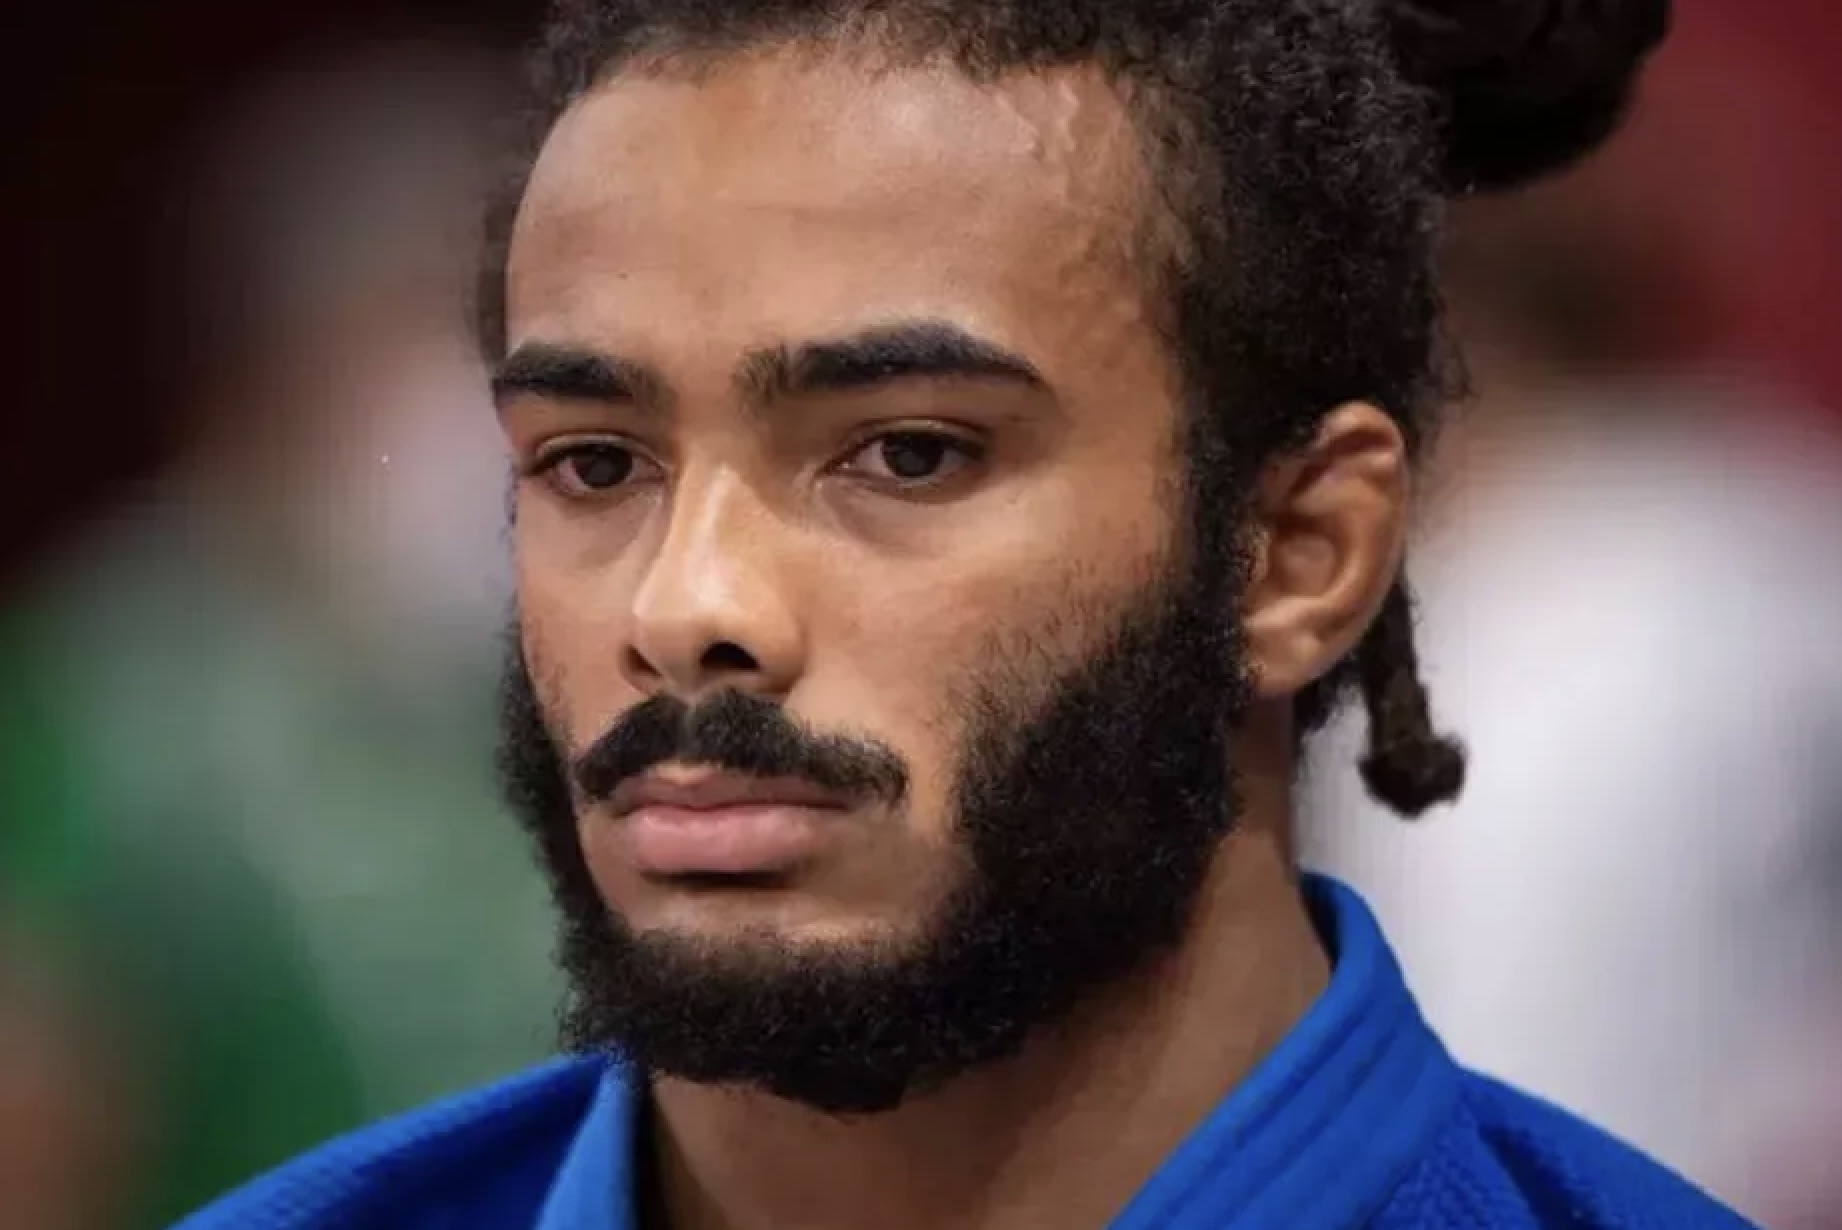     Le Guadeloupéen Hélios Latchoumanaya à nouveau champion du monde de para judo

